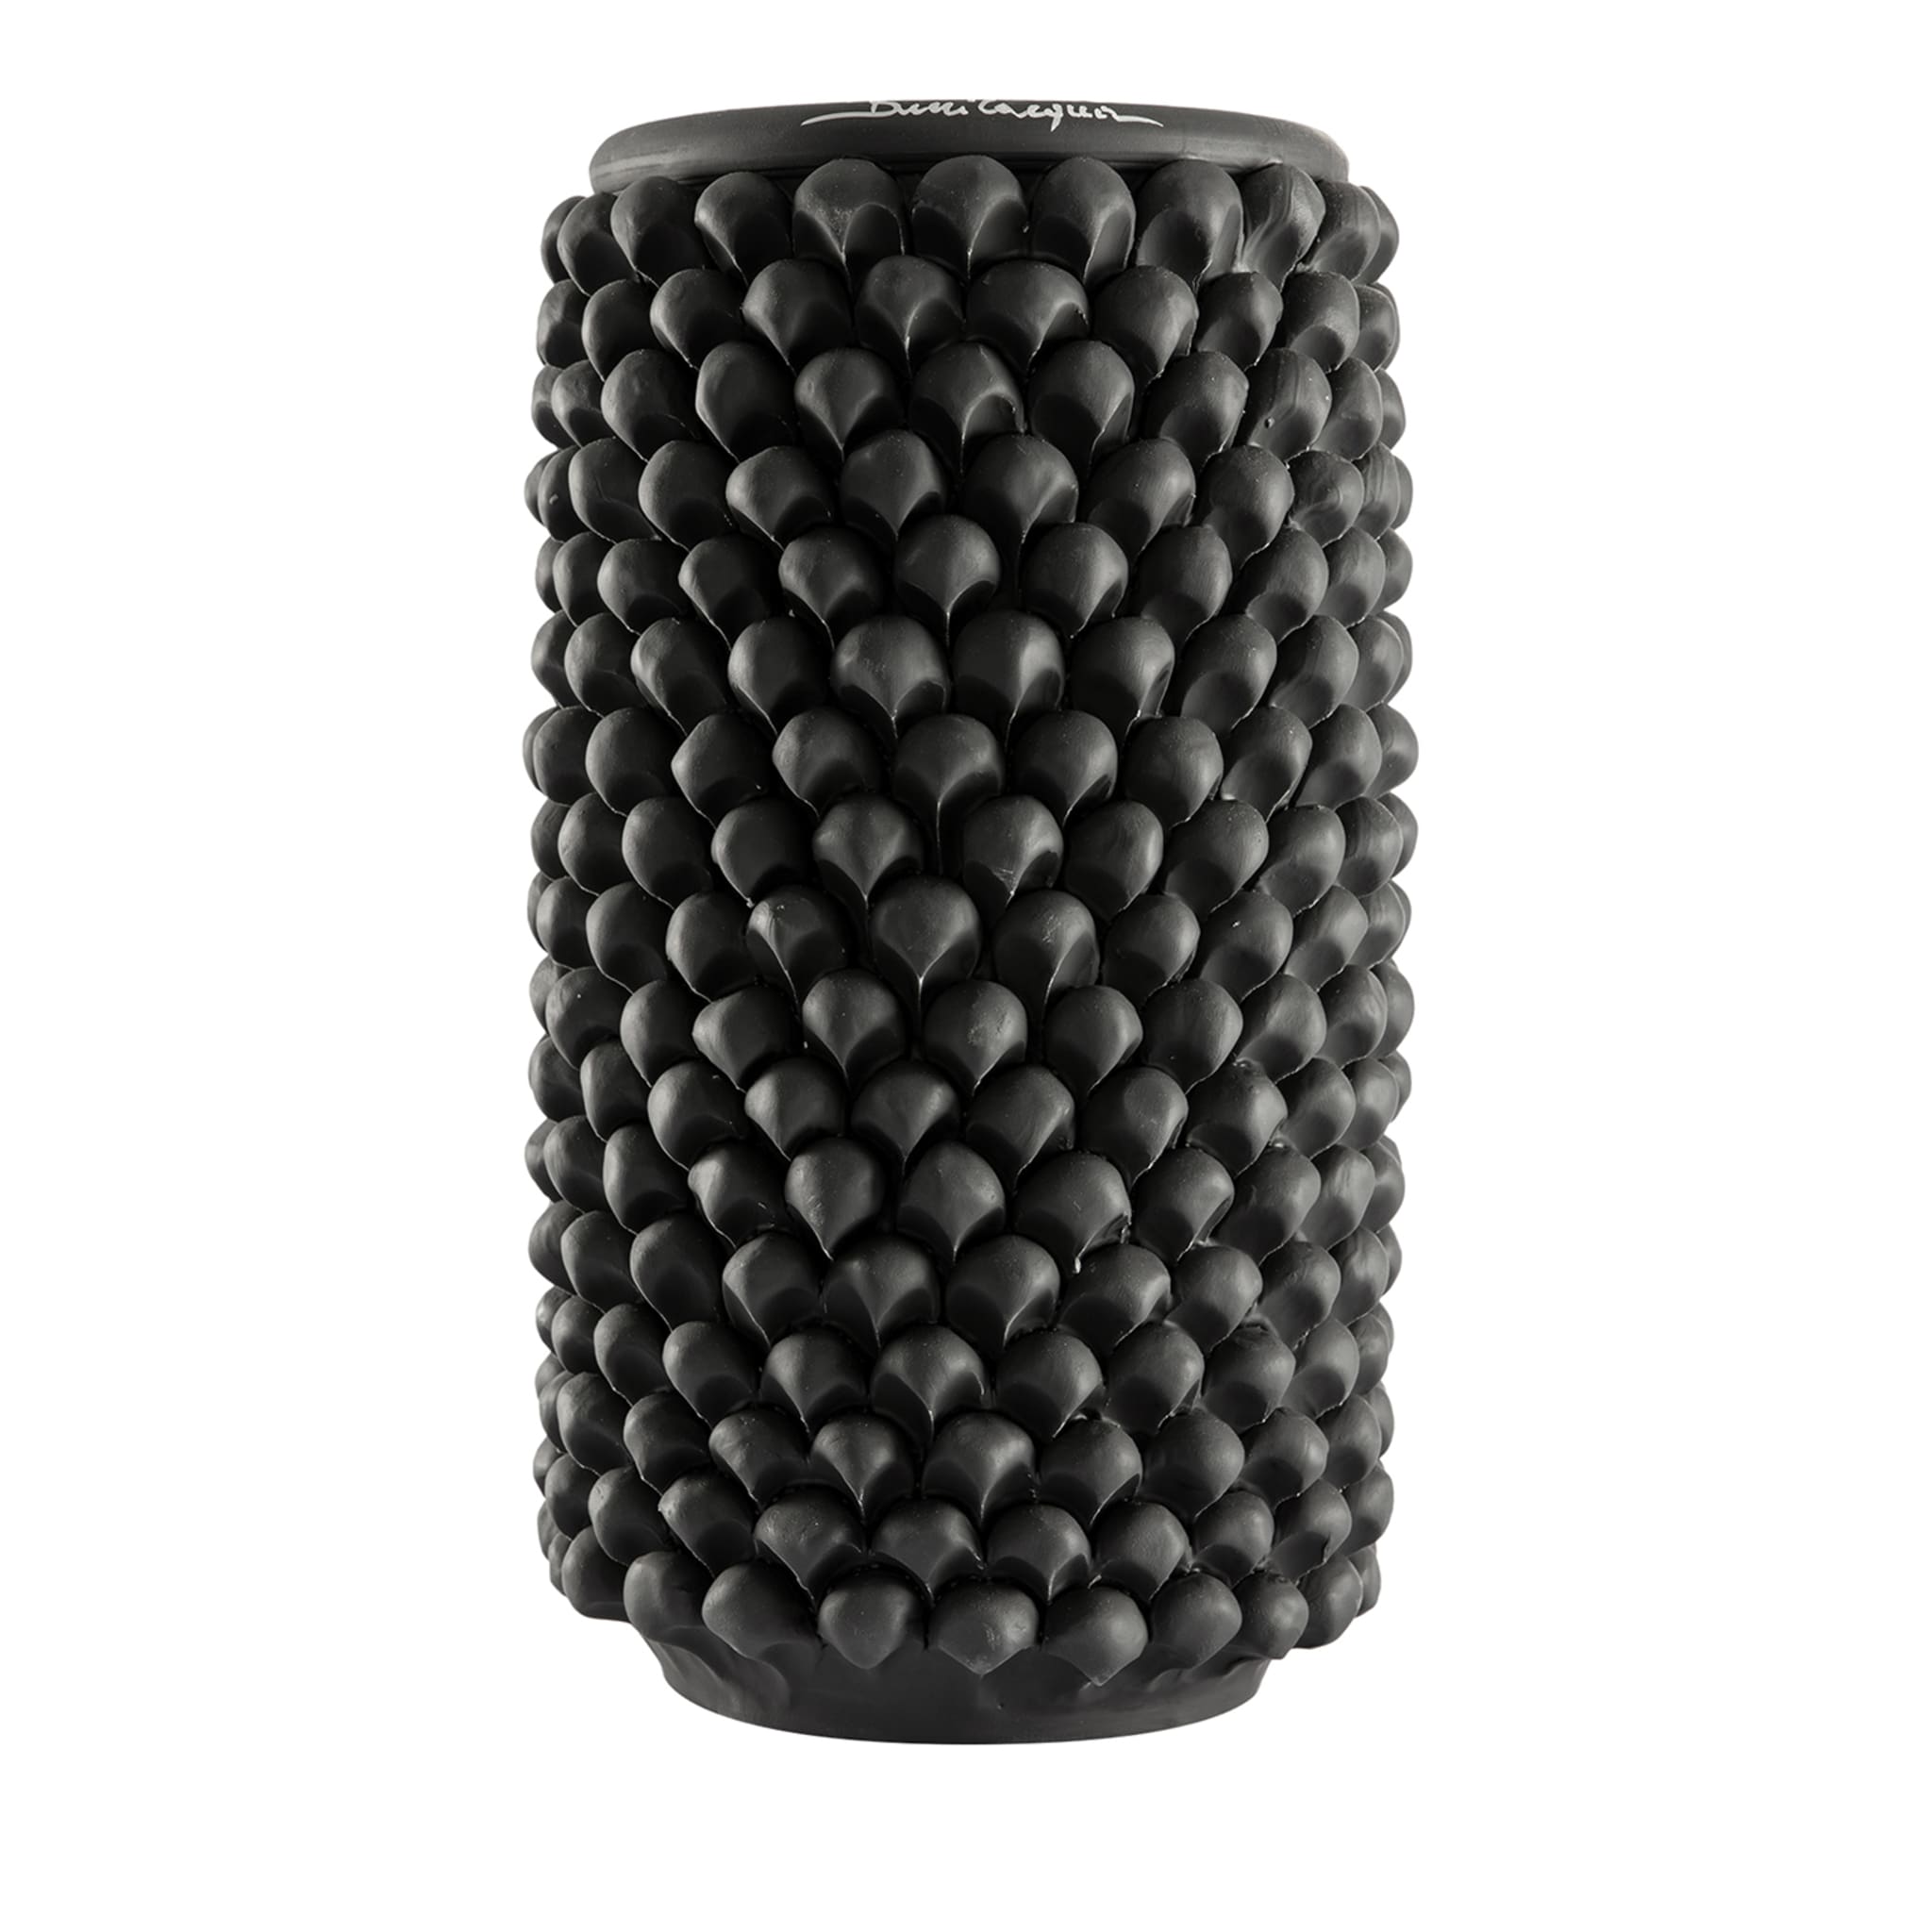 Vaso Nero cilindrico in ceramica - Vista principale